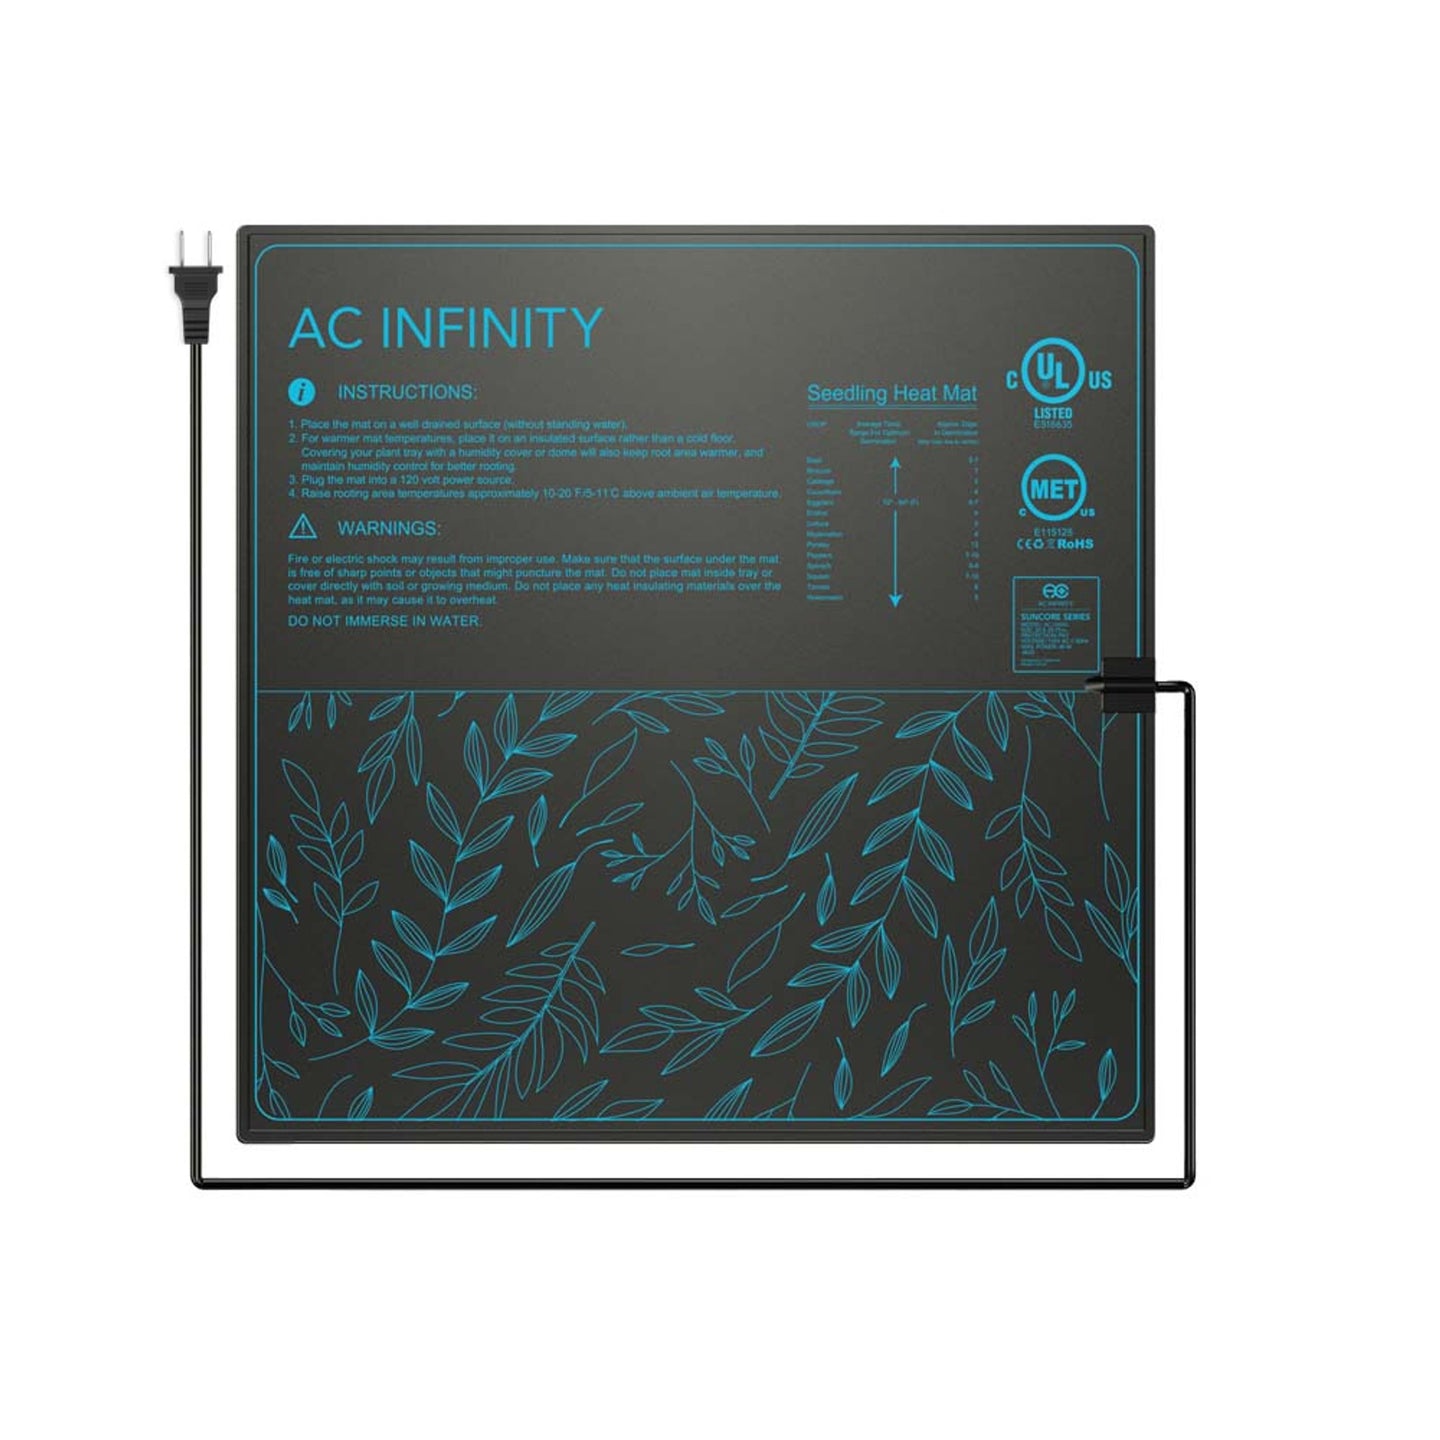 AC Infinity SUNCORE A5, Seedling Heat Mat, IP-67 Waterproof, 20